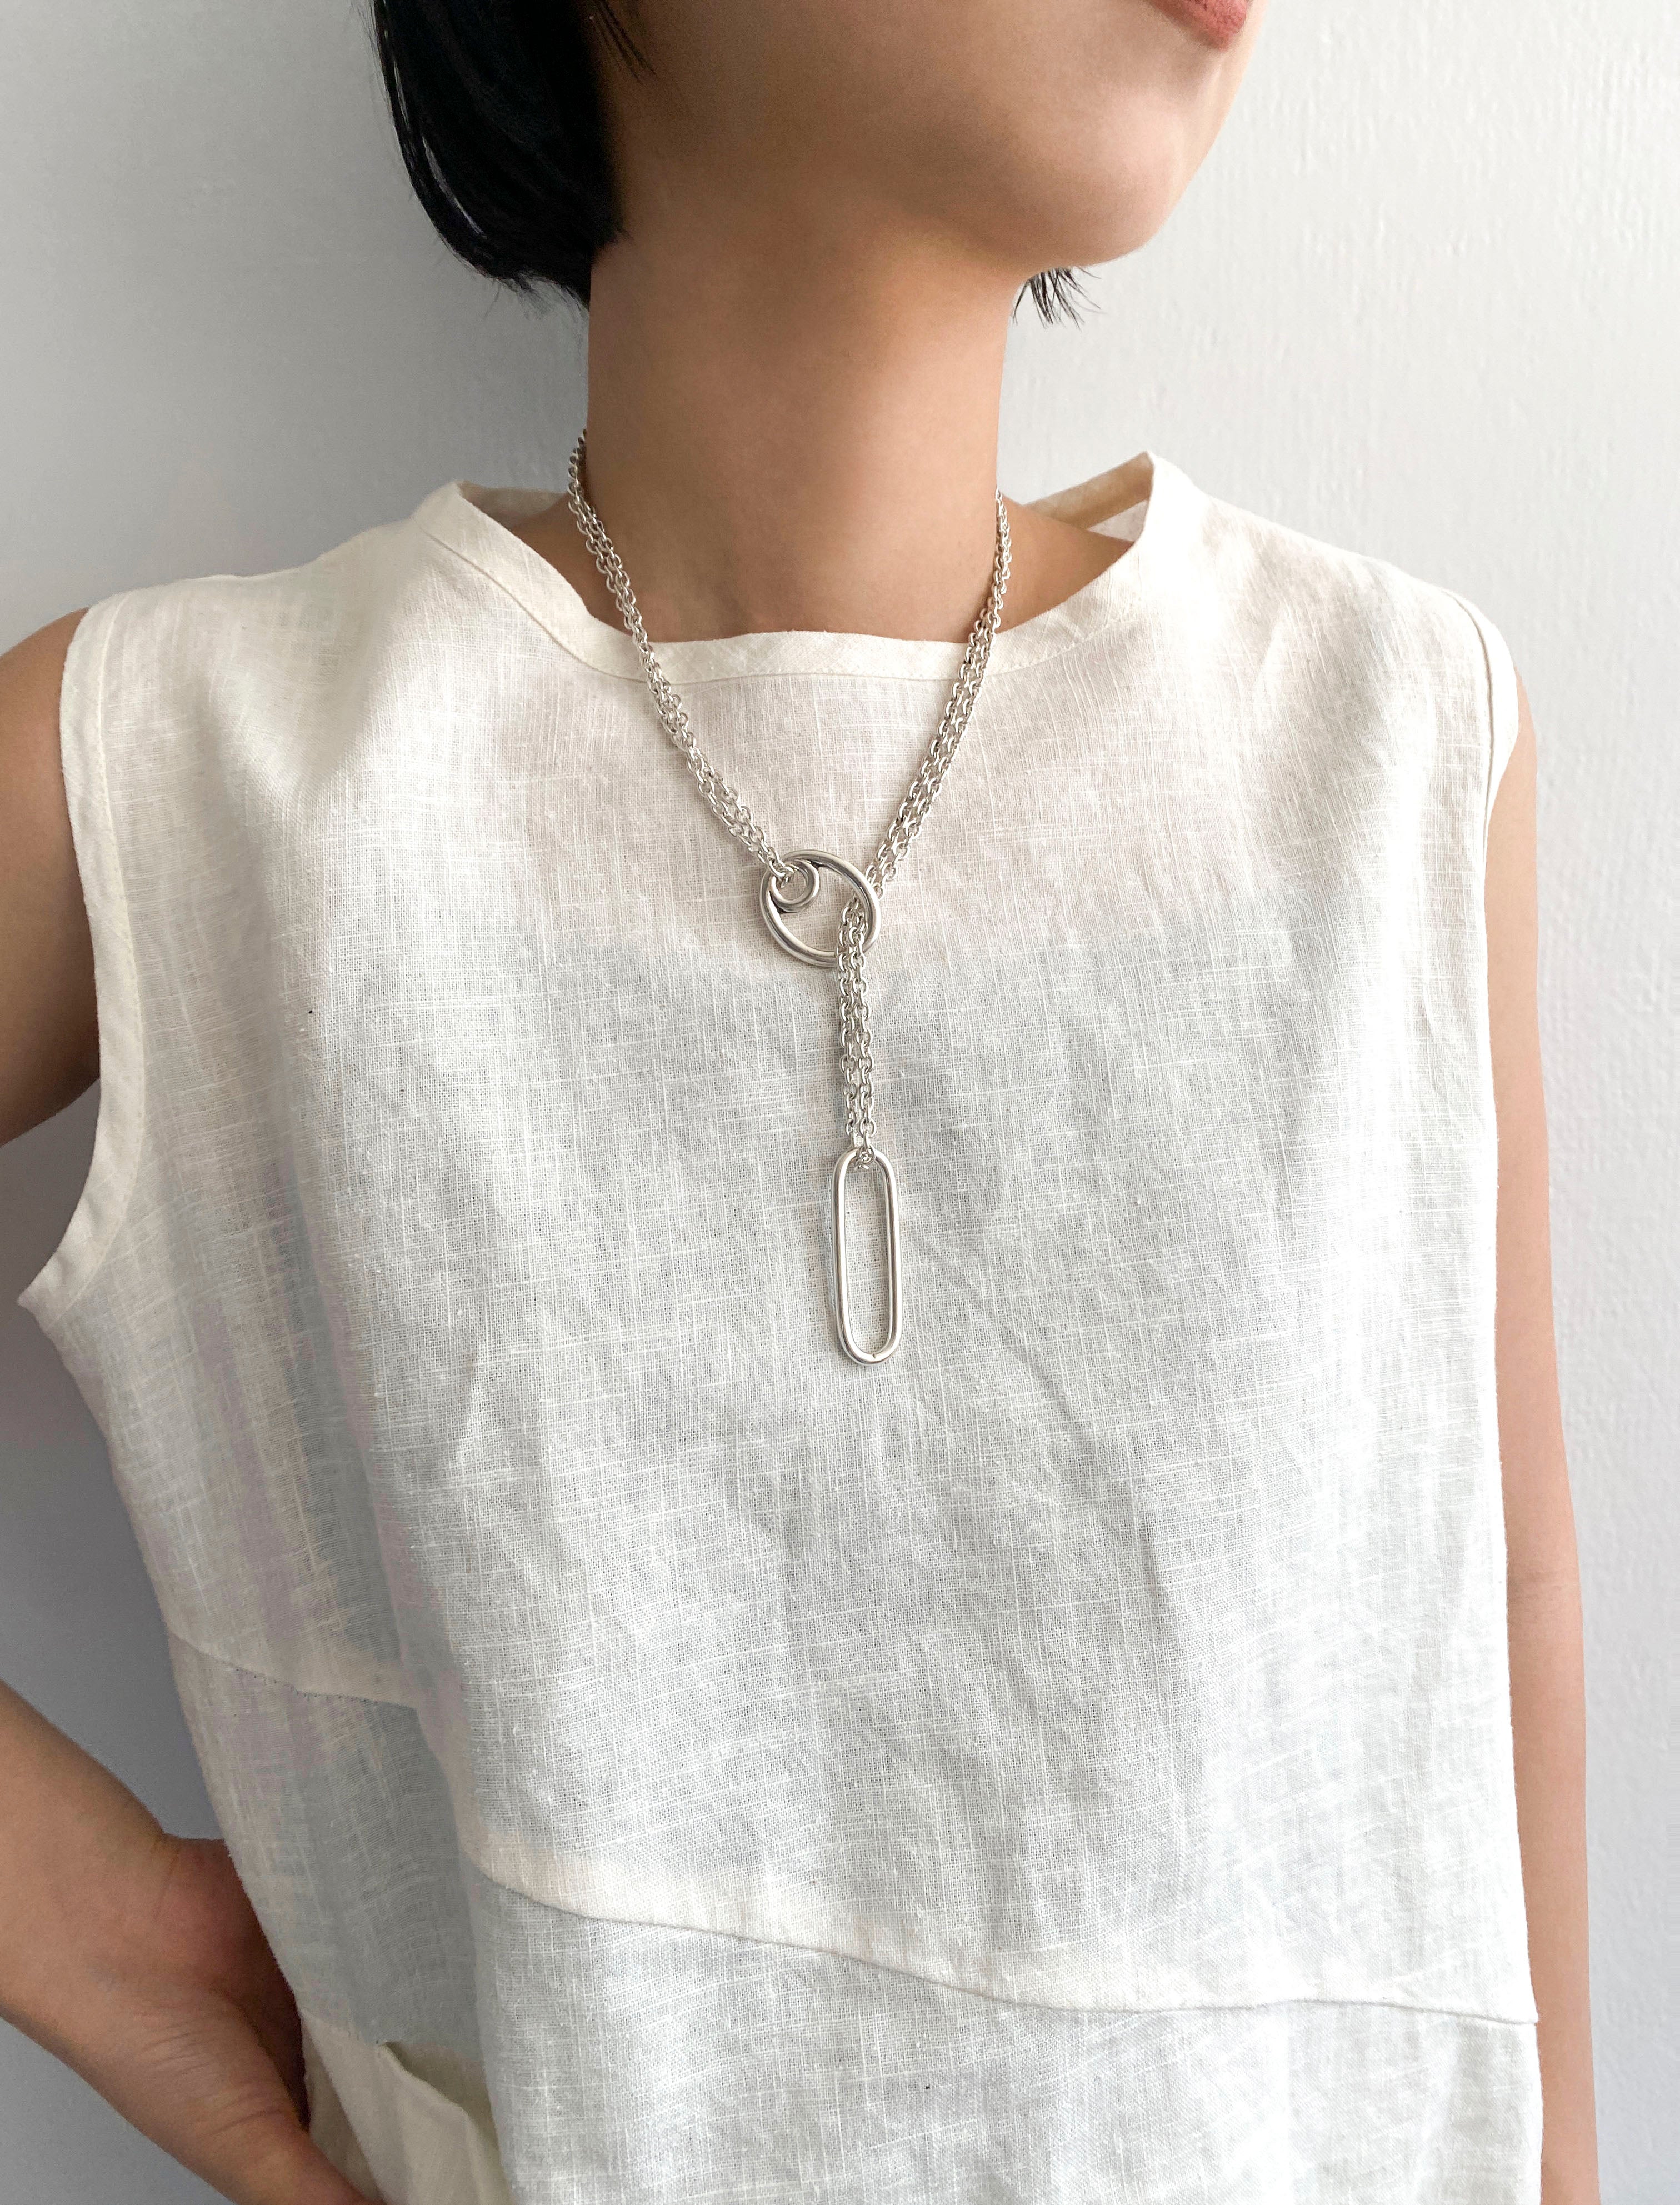 〔Philippe Audibert〕Atara chain necklace